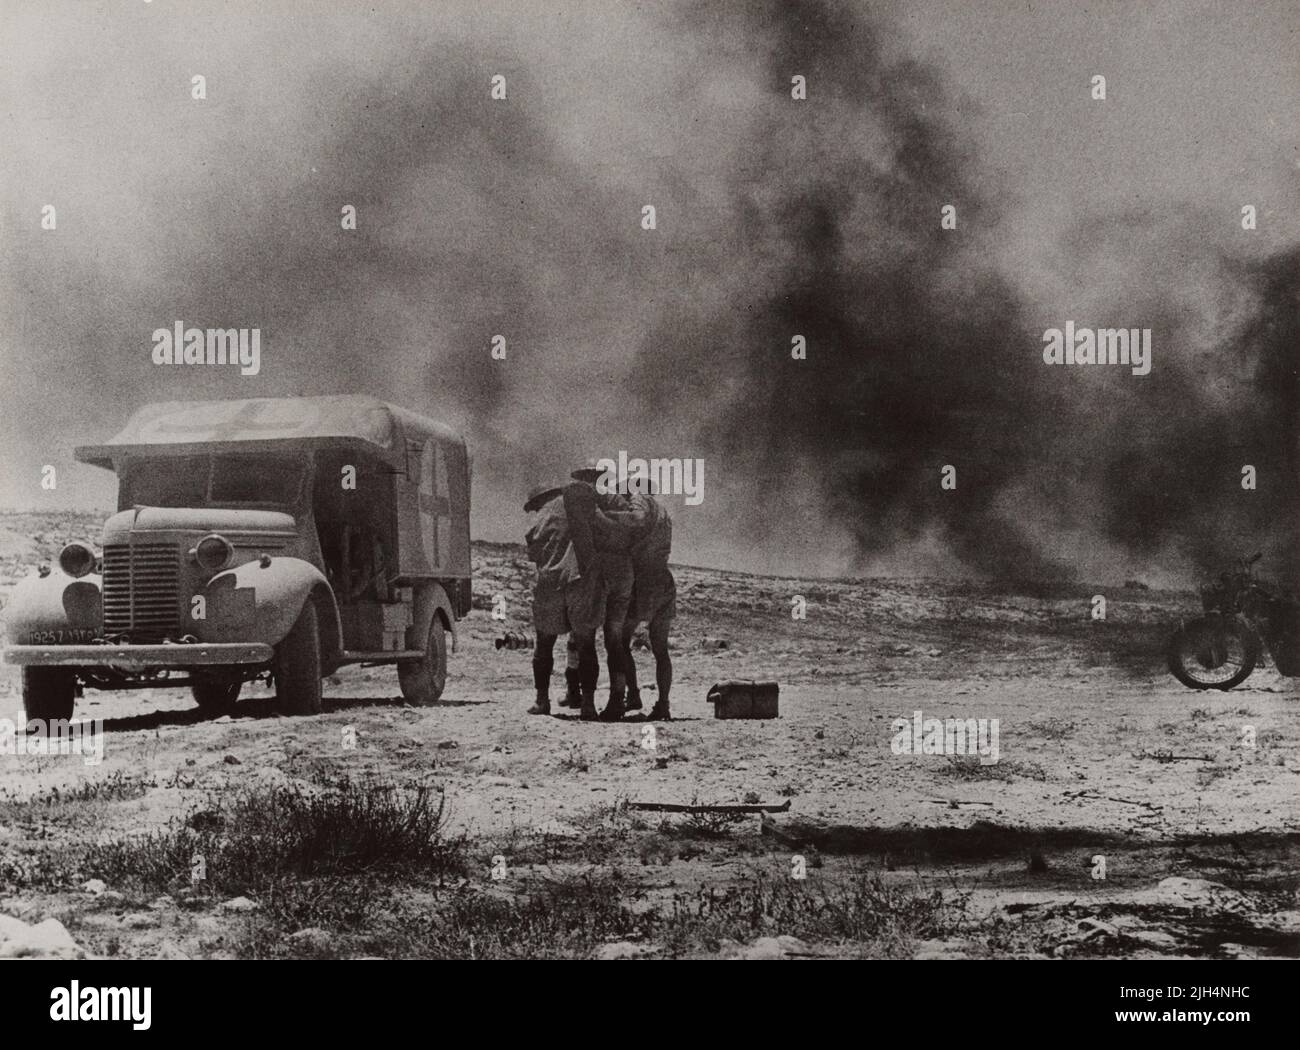 Une photo d'époque vers 1941 montrant deux médecins du Royal Army Medical corps aidant un soldat blessé à une ambulance de campagne peinte par une Croix-Rouge après que les forces de l'axe aient attaqué un convoi médical dans le désert occidental en Afrique du Nord Banque D'Images